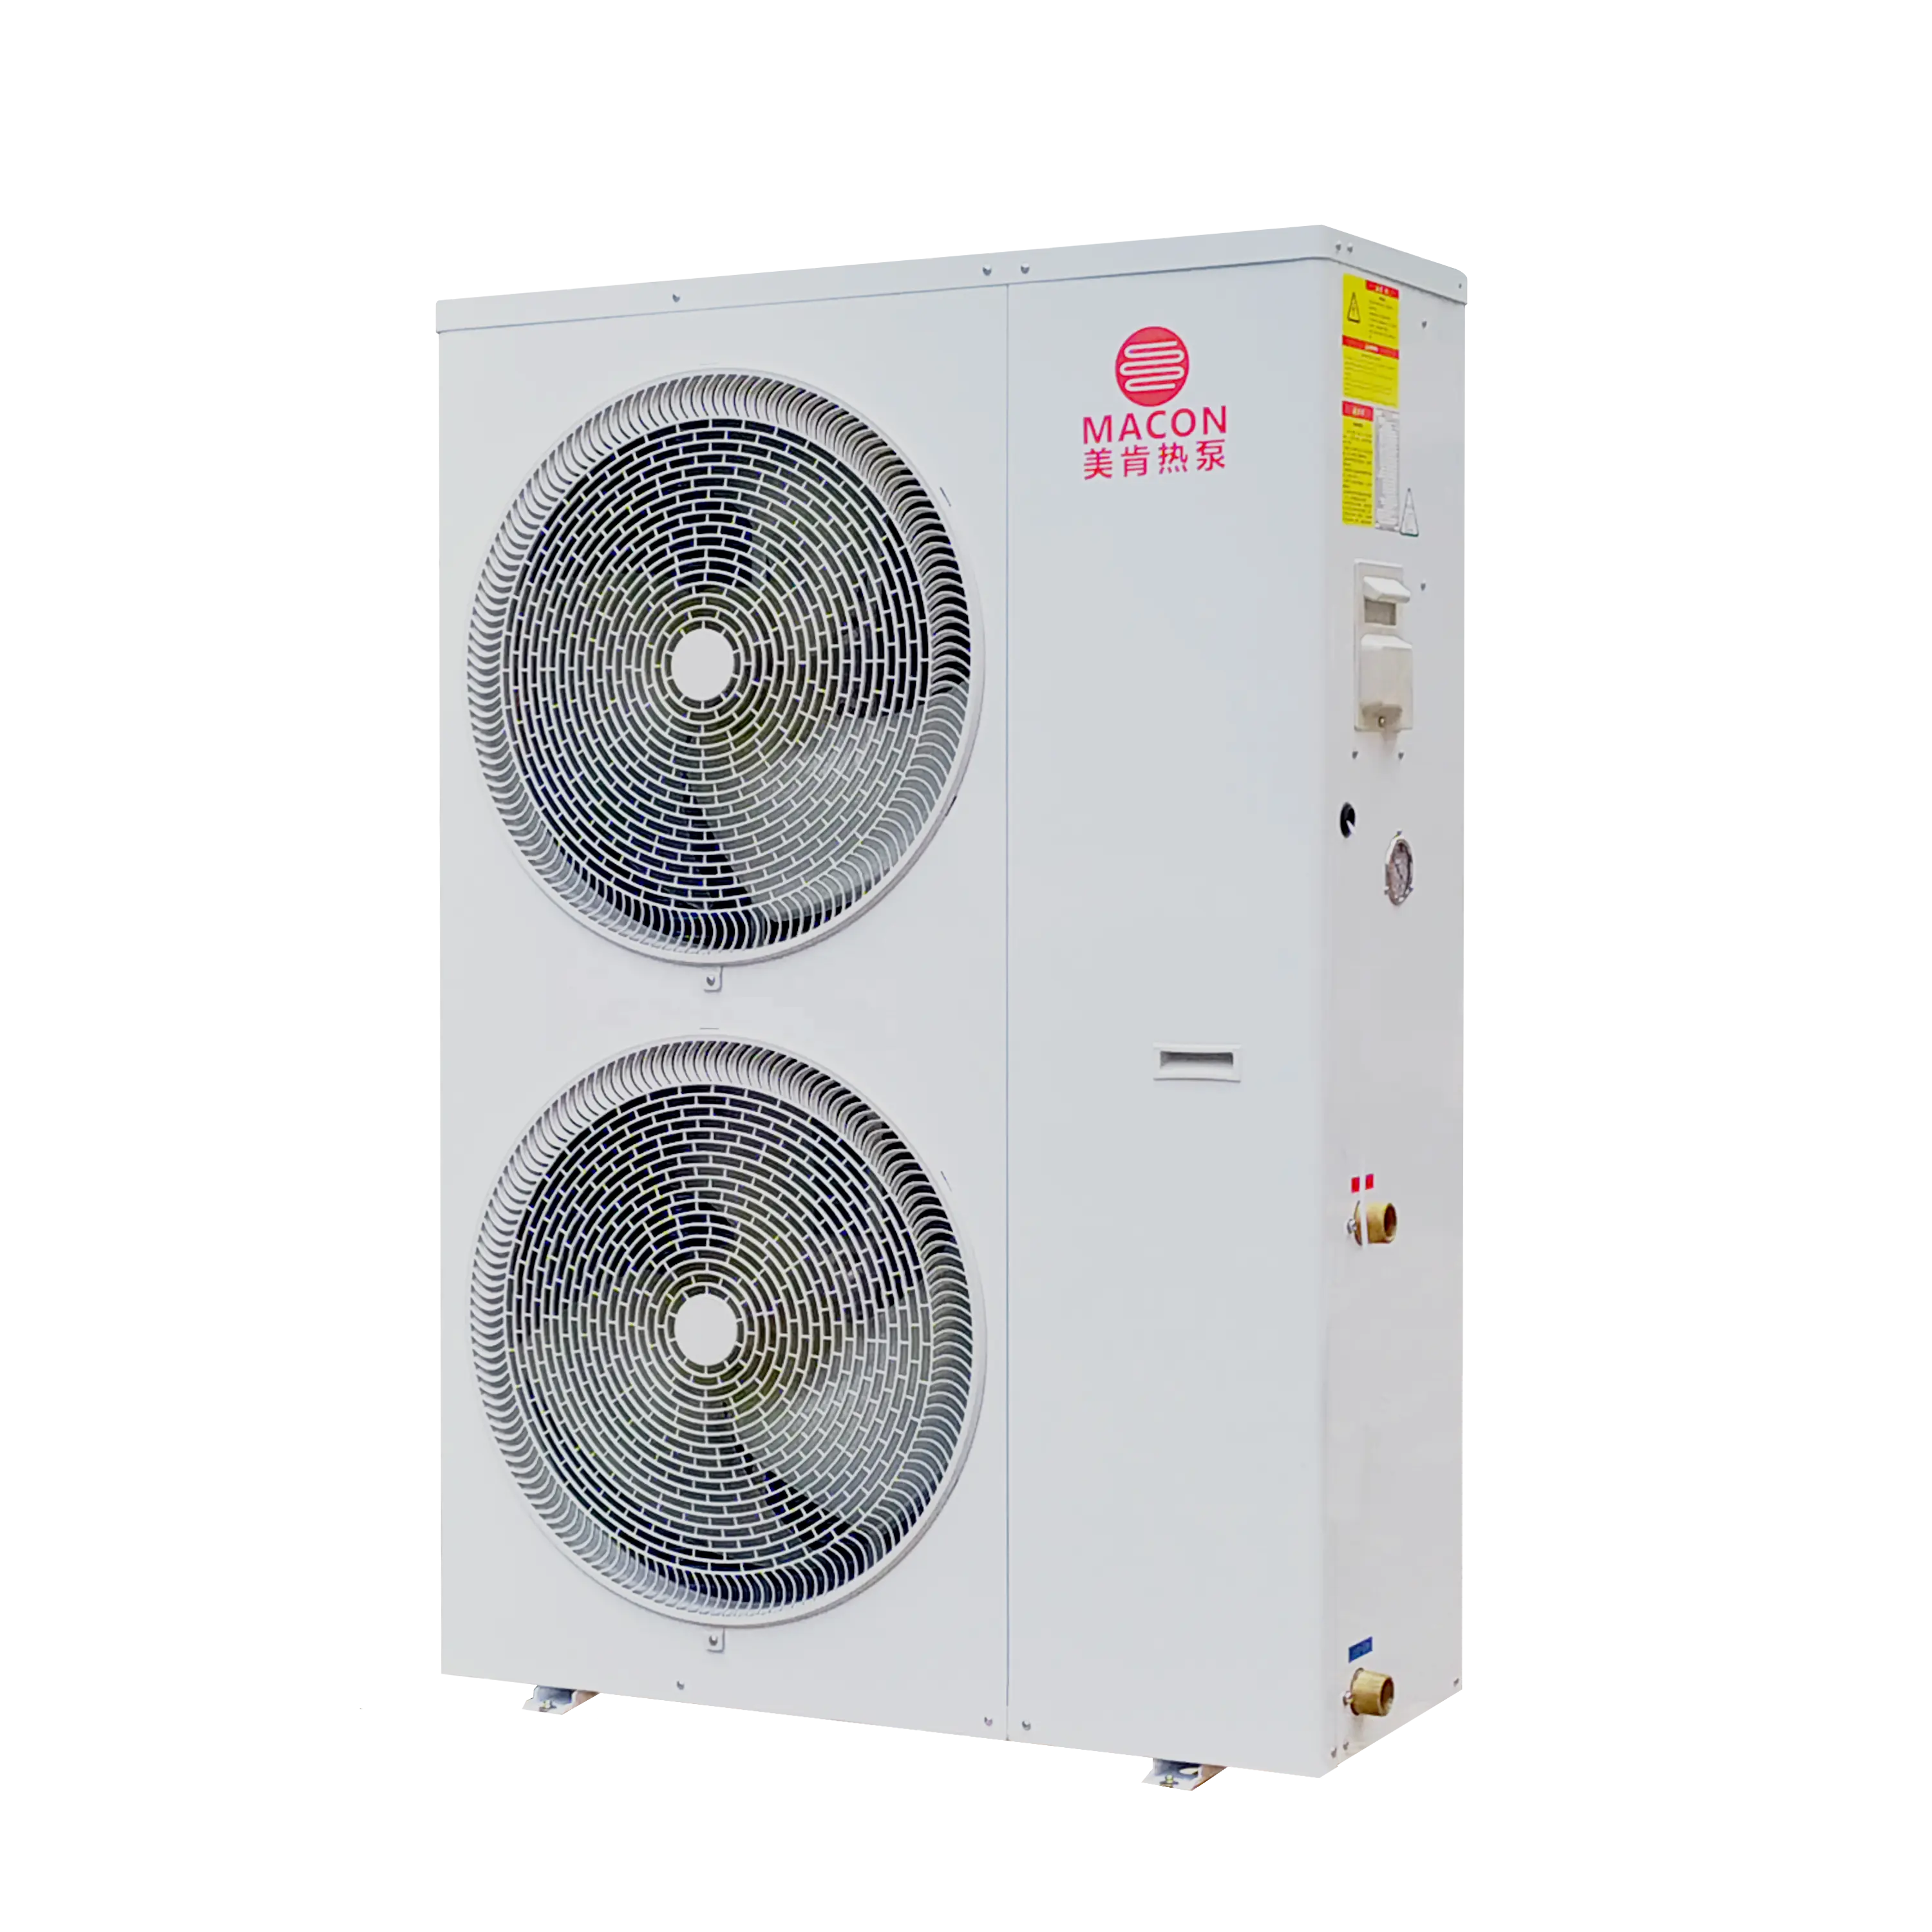 Система домашнего отопления Erp MACON A +++, Высокоэффективная и энергосберегающая, с инвертором постоянного тока, тепловой насос 20 кВт, домашняя система отопления